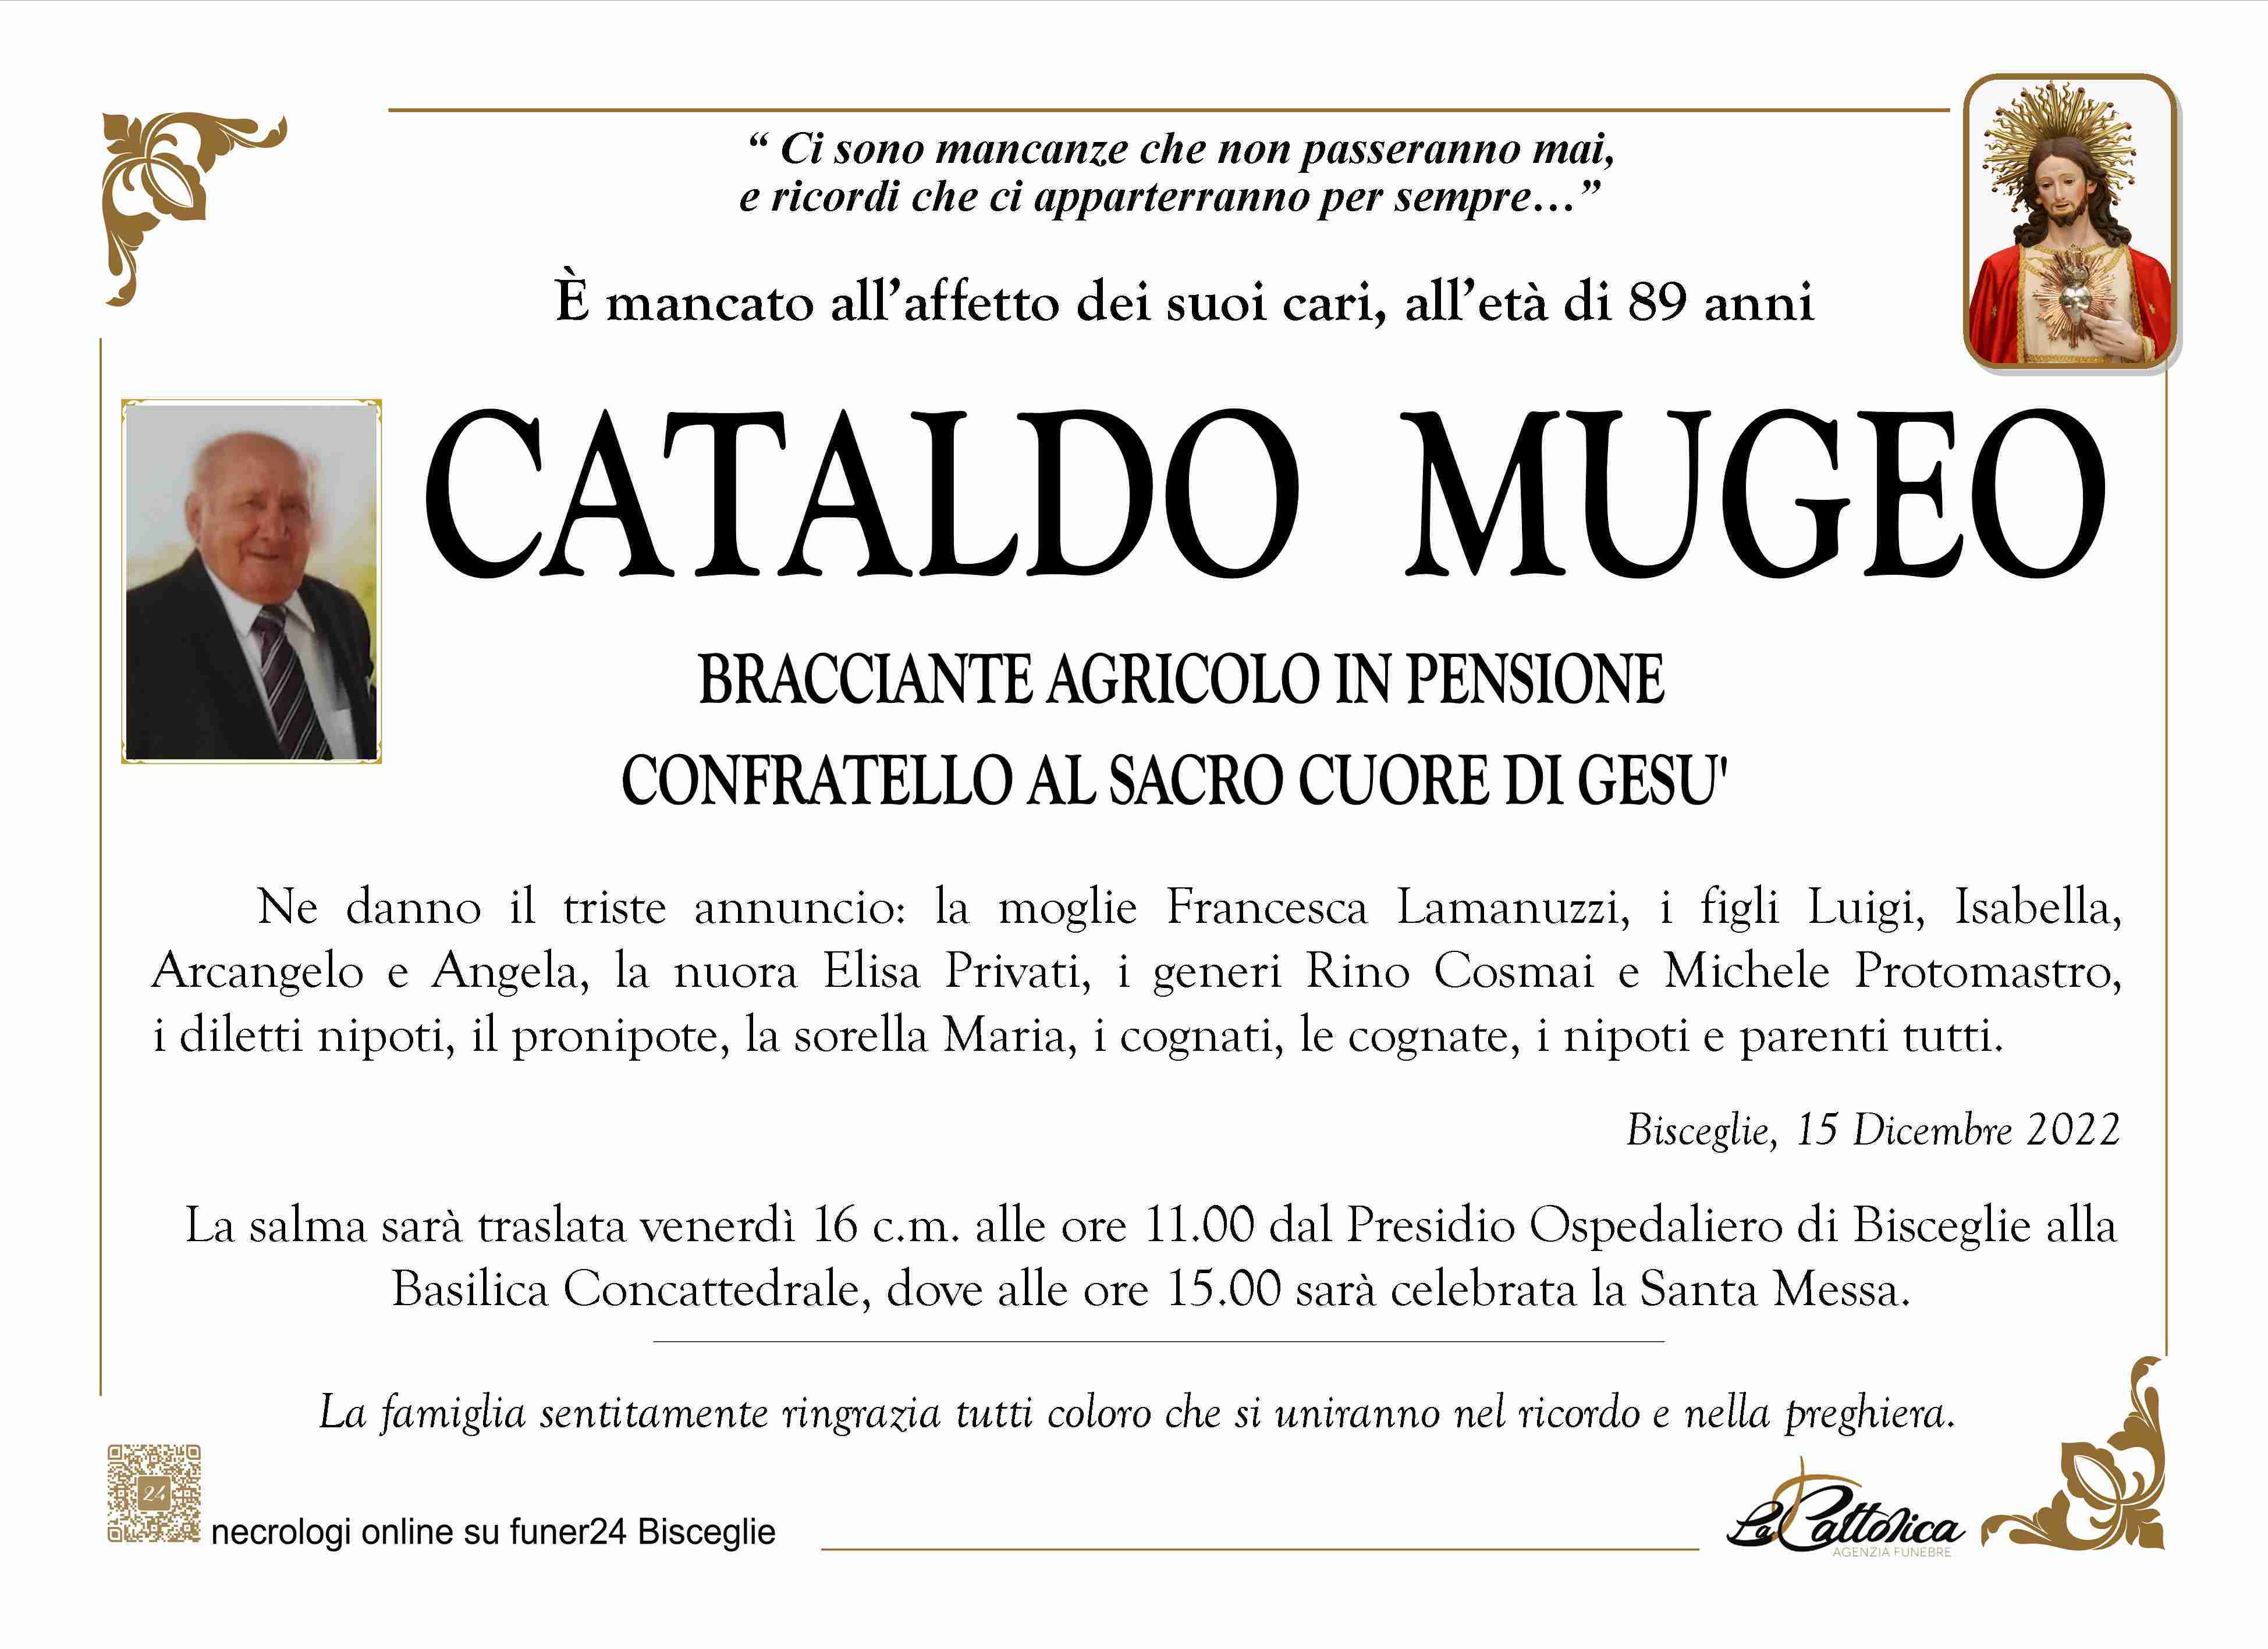 Cataldo Mugeo